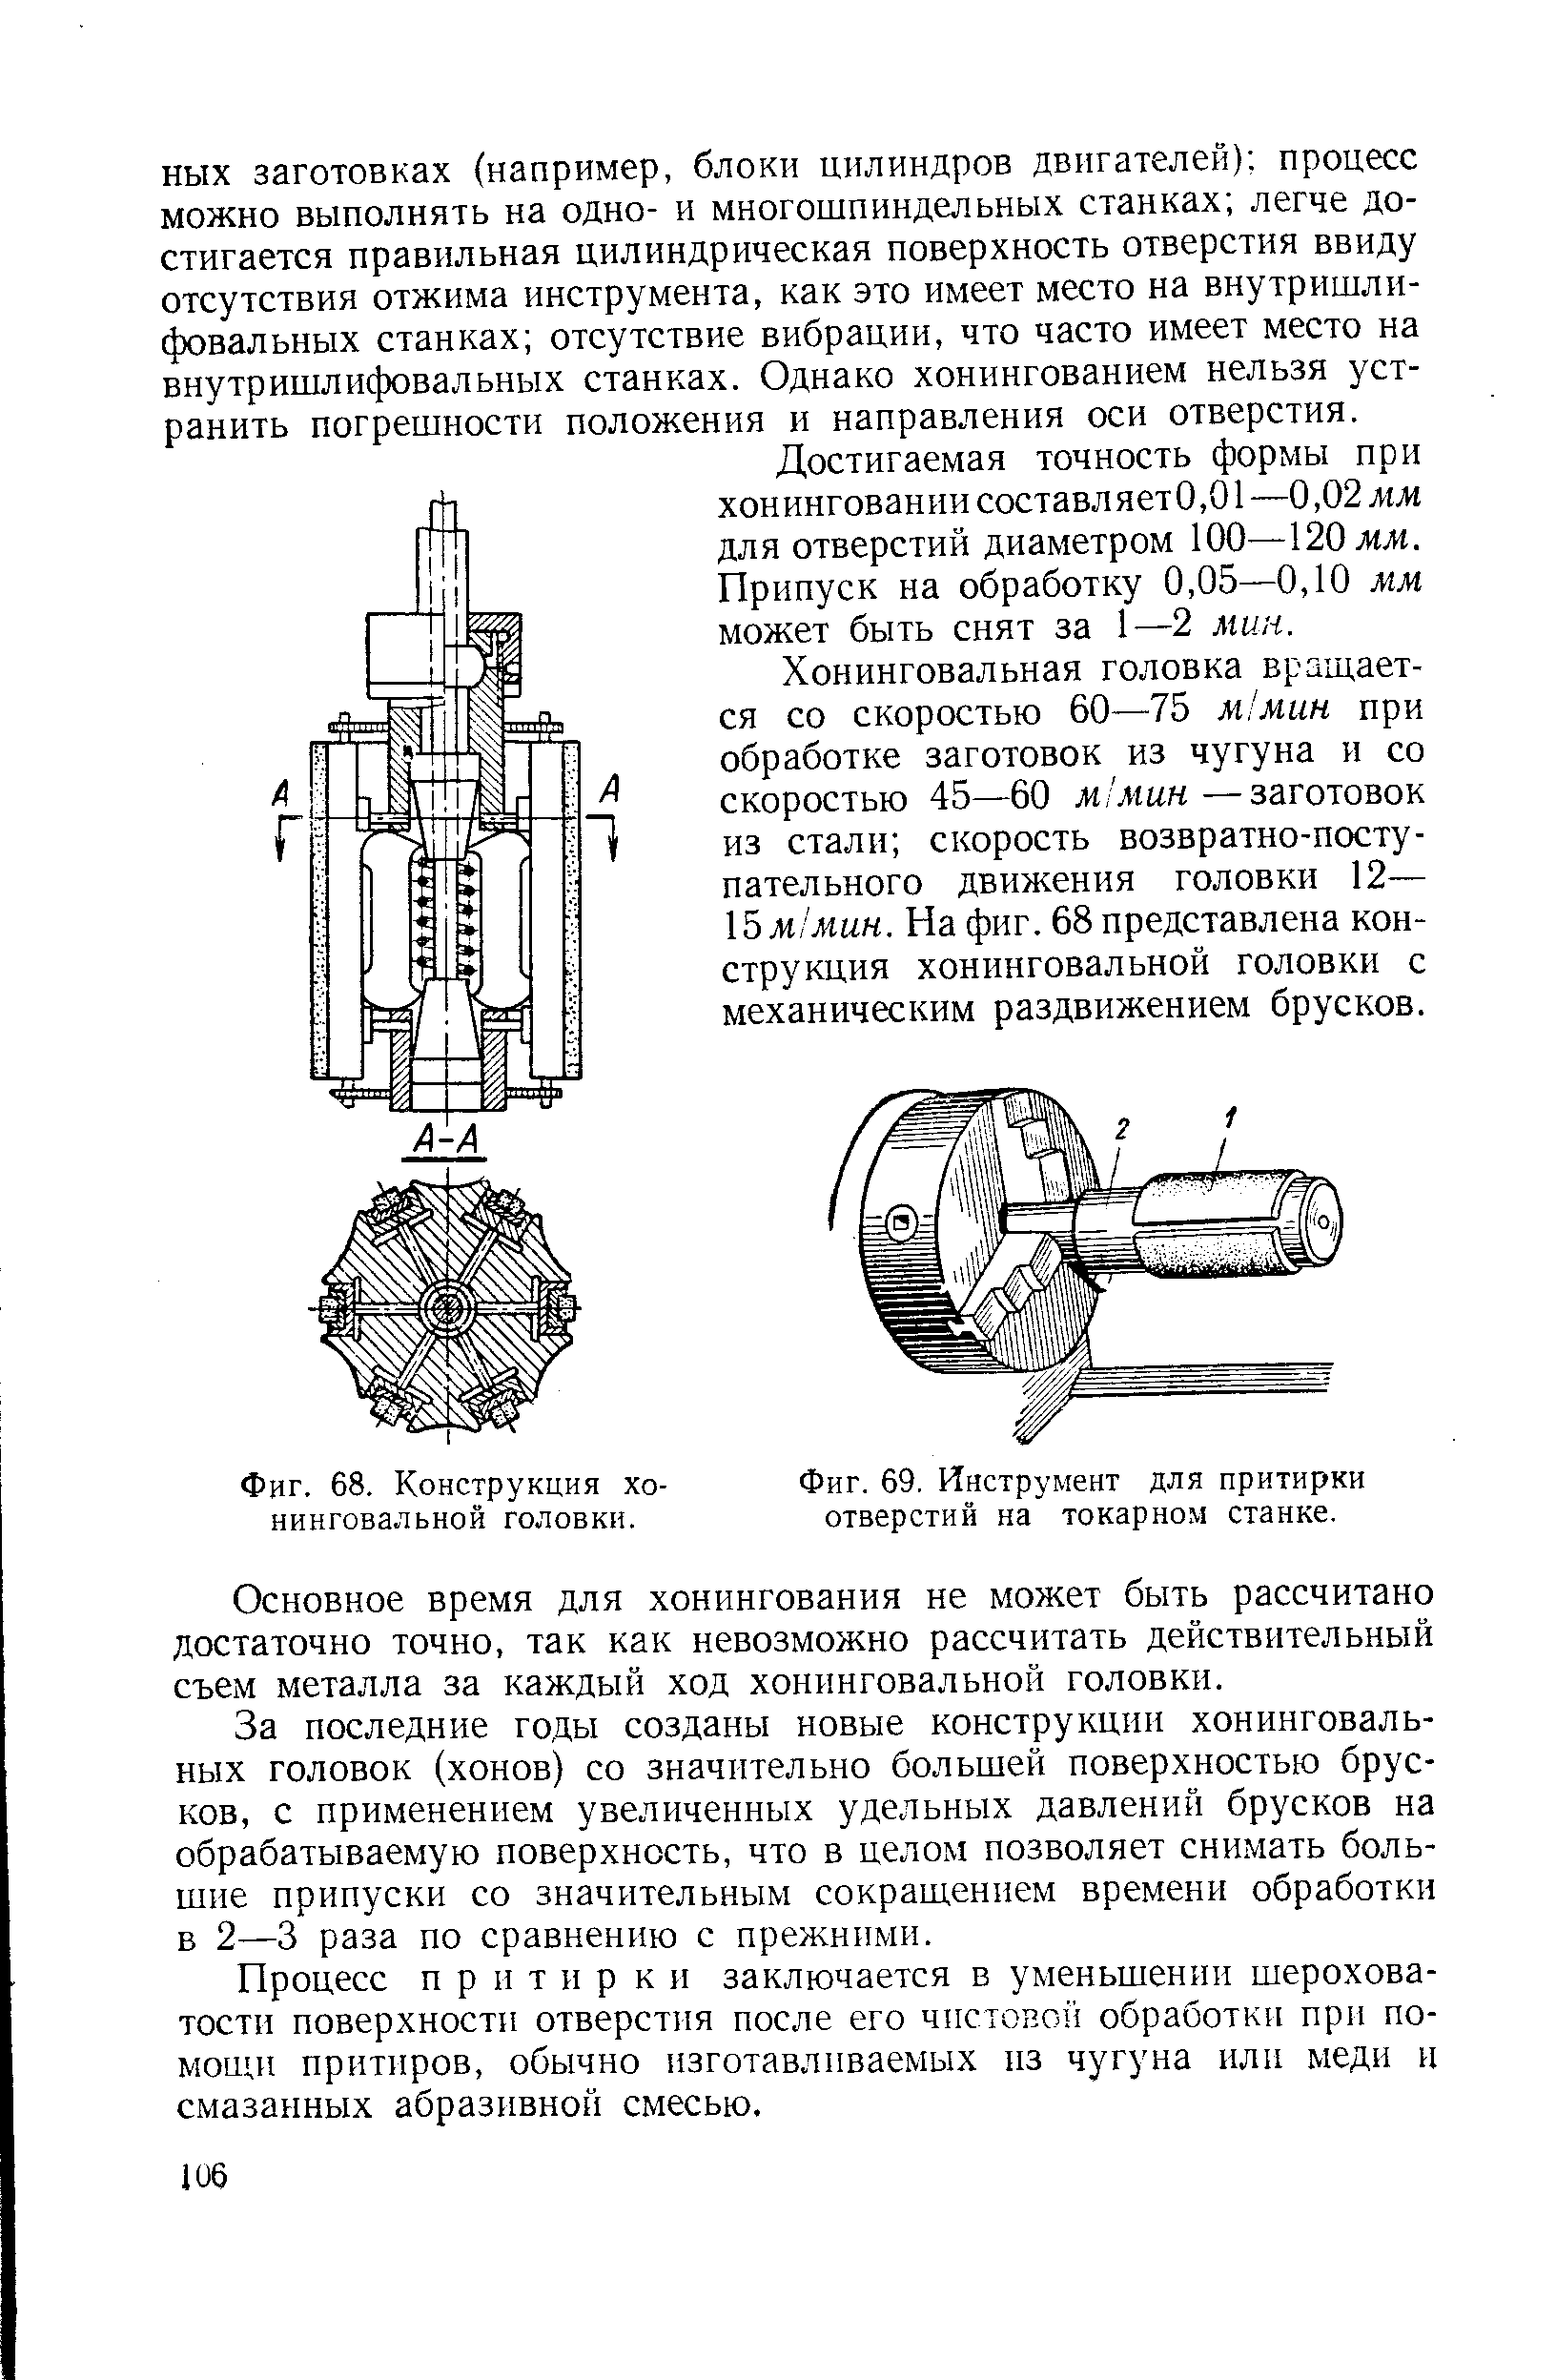 Фиг. 69, Инструмент для притирки отверстий на токарном станке.
